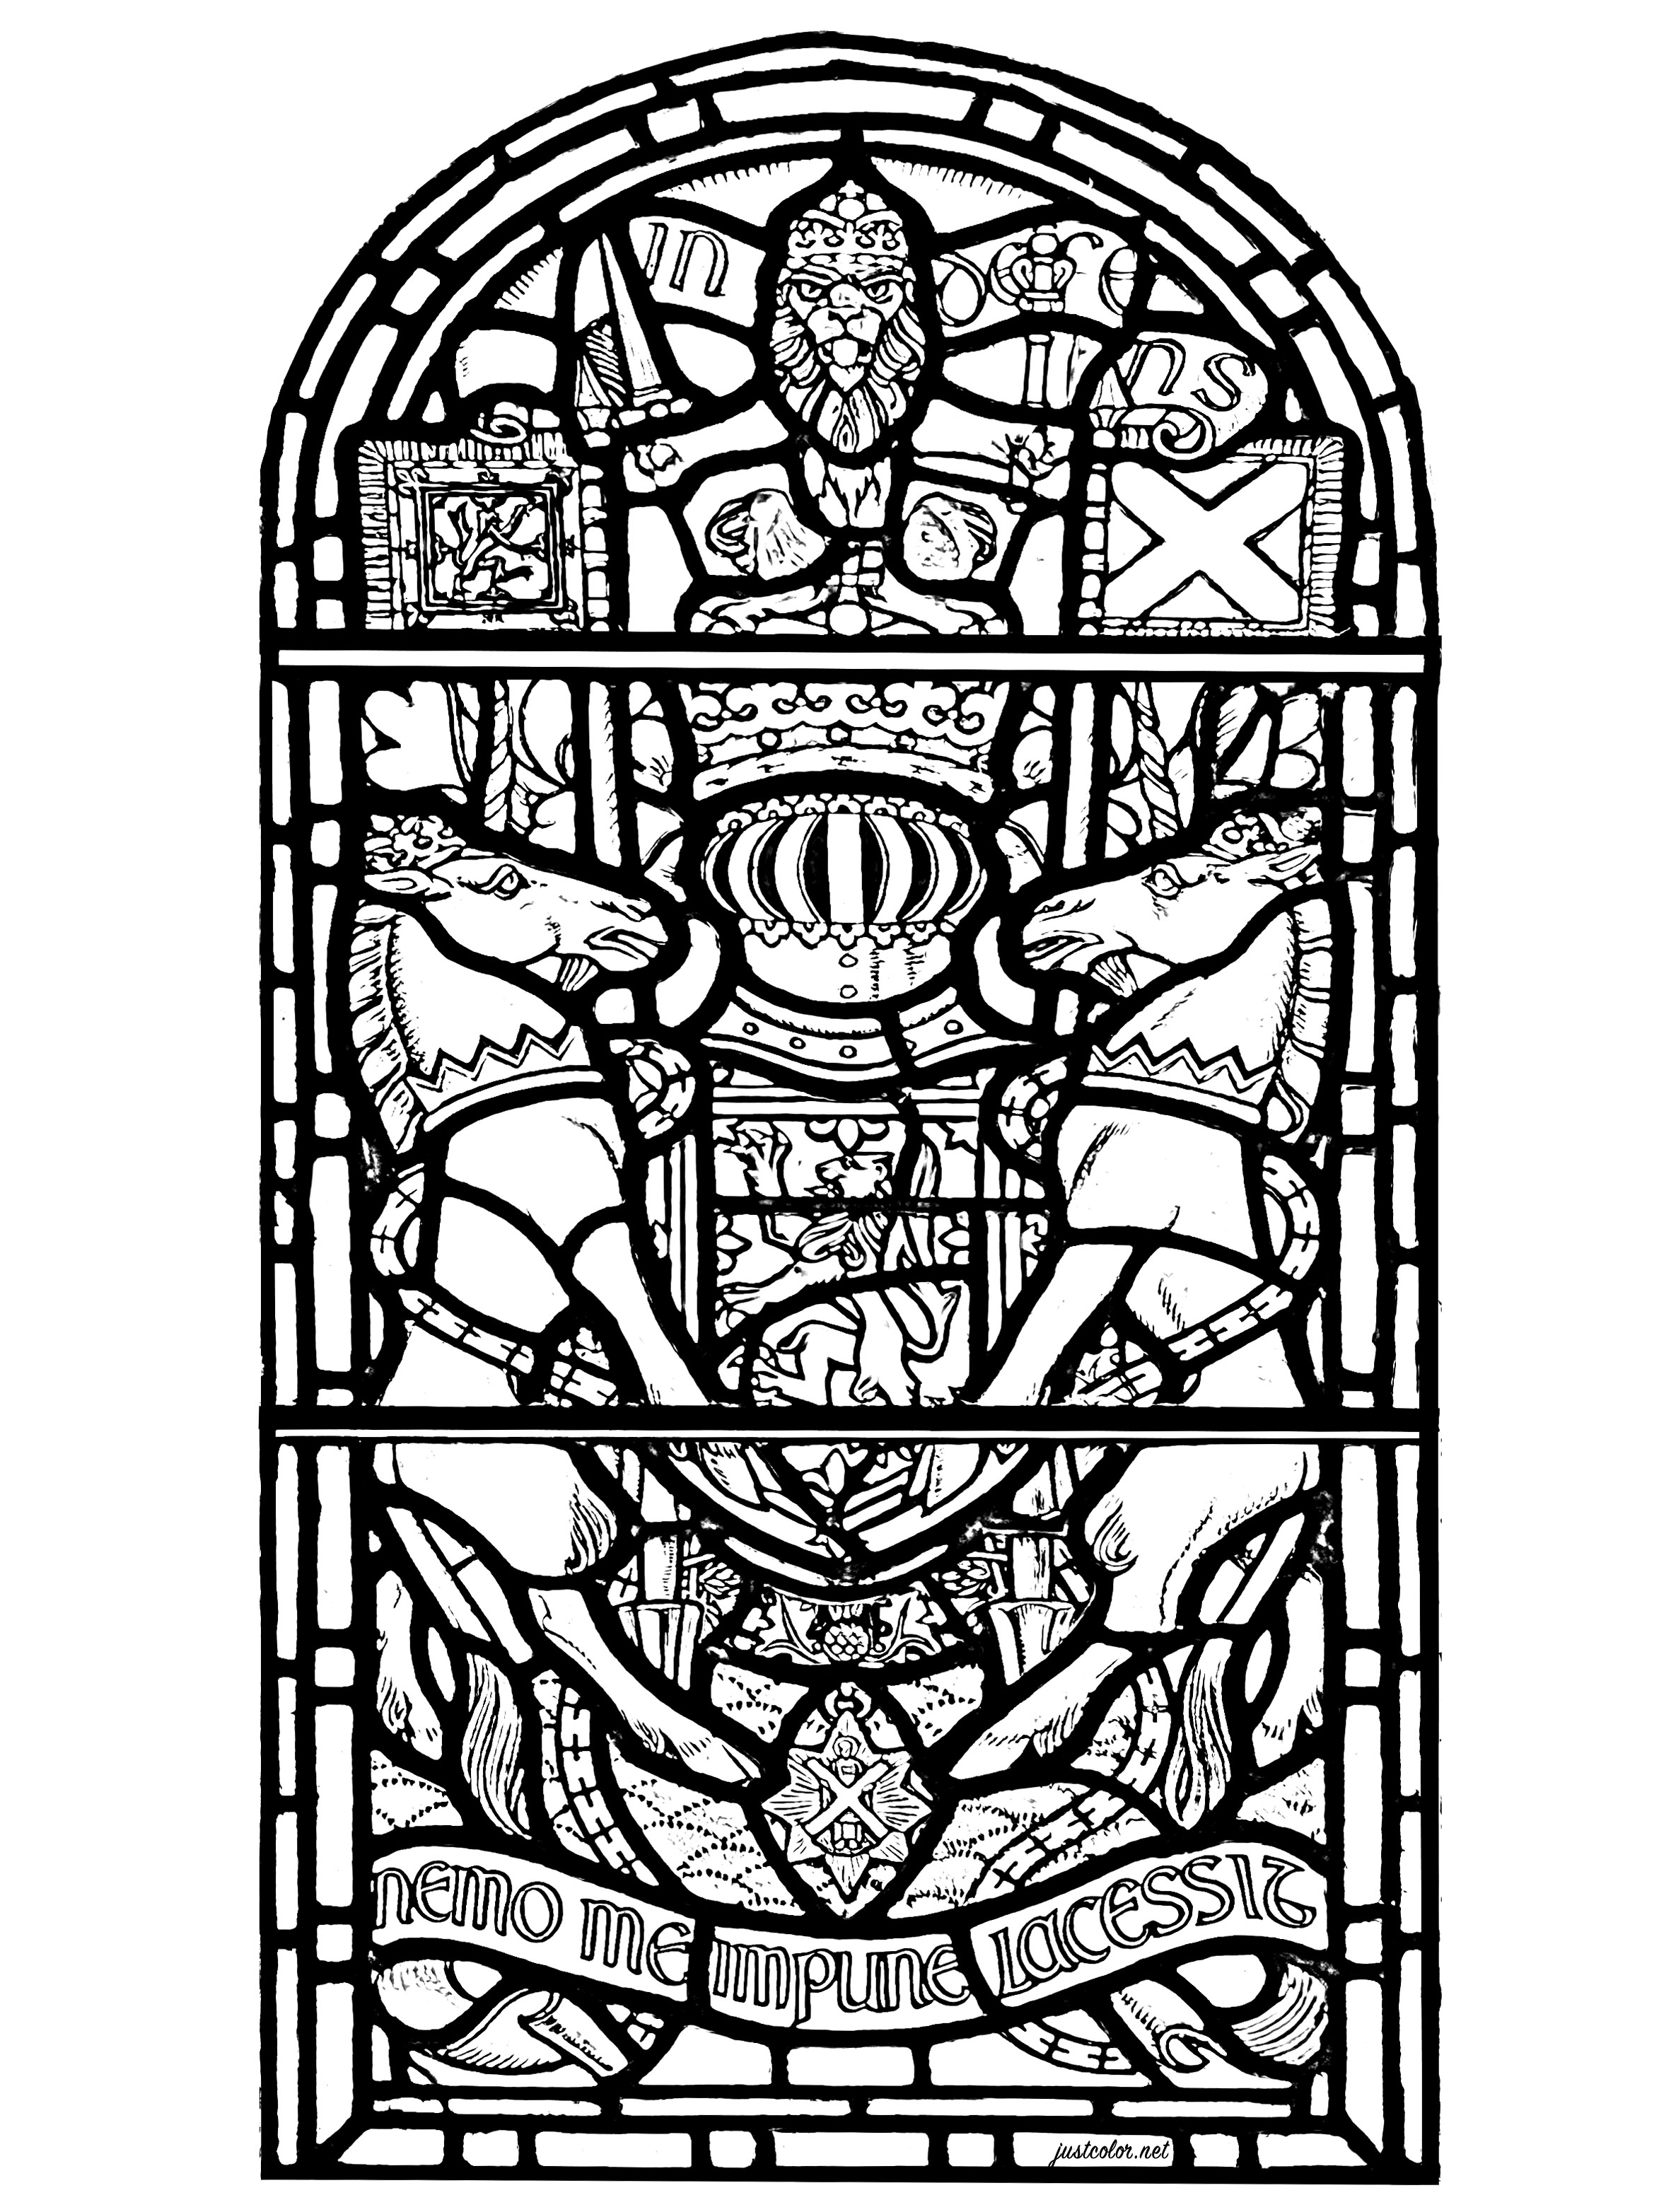 Glasfenster von Edinburgh Castle, Schottland. Die Glasmalerei zeigt verschiedene schottische Symbole sowie den Text 'Nemo me impune lacessit', das lateinische Motto des Distelordens.Es erscheint auf dem königlichen Wappen des Vereinigten Königreichs in Schottland.Es bedeutet 'Niemand beleidigt mich ungestraft'.